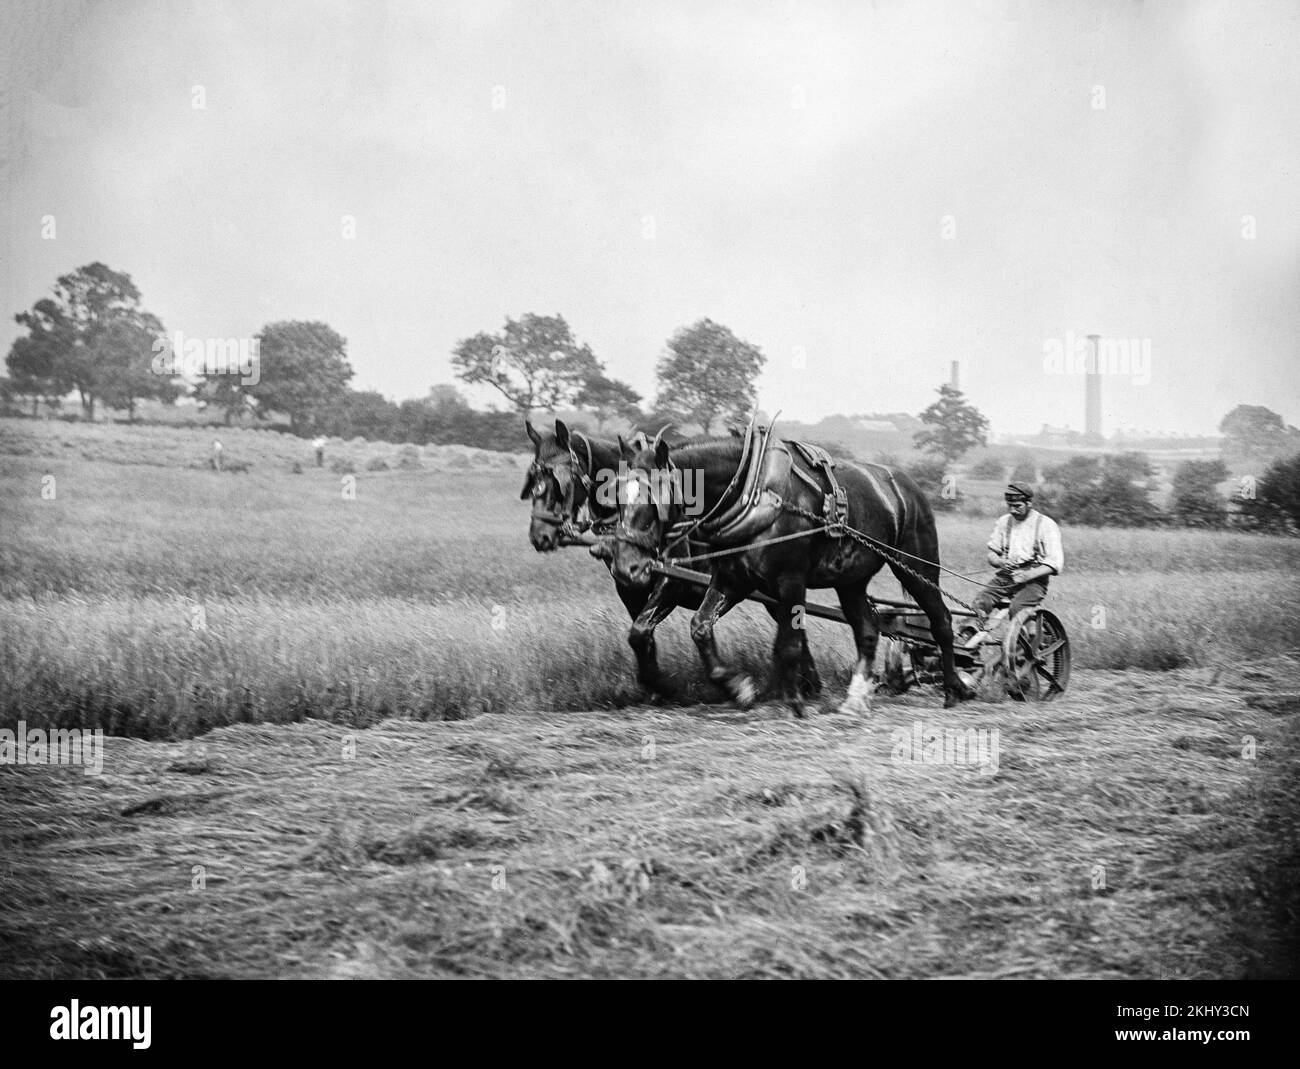 Photographie anglaise en noir et blanc de la fin du 19th siècle montrant deux grands chevaux Shire tirant une machine de coupe de foin de graminées avec l'agriculteur assis sur le dessus. Banque D'Images